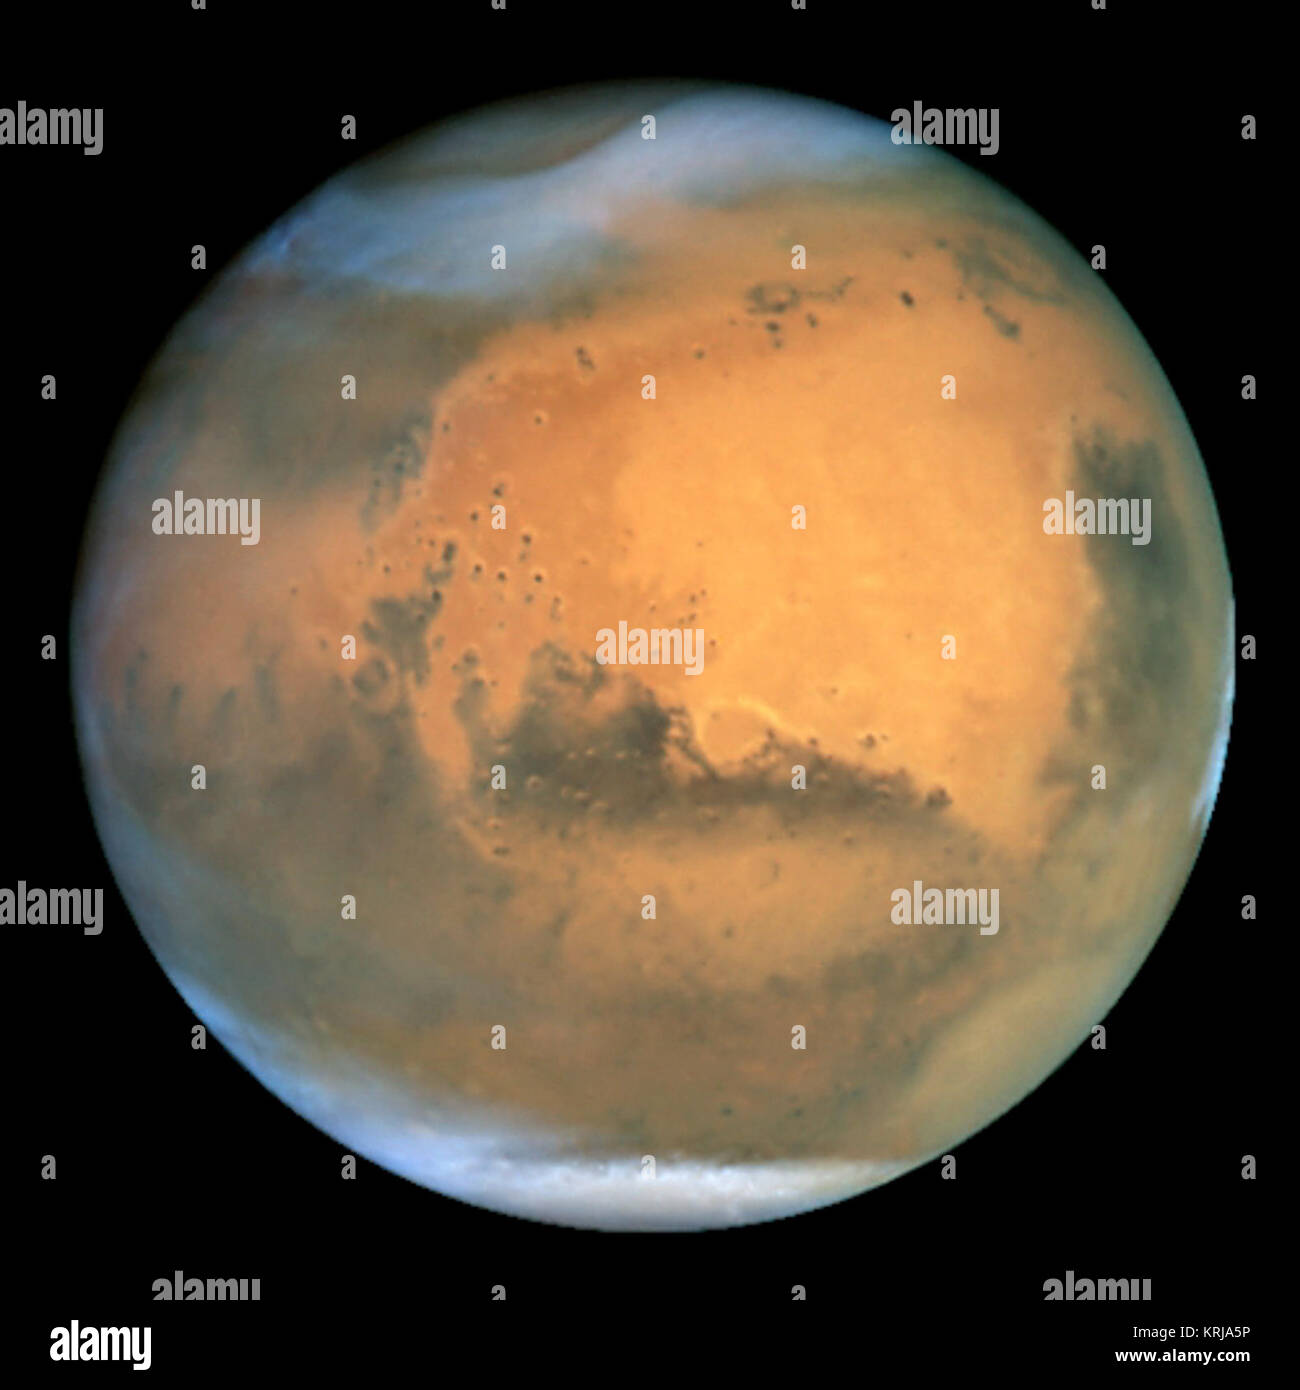 Frosty white water Eiswolken und wirbelnden orange Staubstürme über eine lebendige rostigen Landschaft offenbaren Mars als ein dynamischer Planet in diesem schärfsten Blick jemals von einer Masse erlangt Teleskop. Die Erde umkreisen von Hubble Teleskop dieses Bild am 26. Juni, wenn Mars war rund 43 Millionen Meilen (68 Mio. km) von der Erde - seine nächste Annäherung zu unserem Planeten riss seit 1988. Hubble können Details so klein wie 10 Meilen (16 km) über. Besonders auffällig ist die große Menge an saisonalen Staubsturm Aktivität in diesem Bild gesehen. Ein großer Sturm System ist überaus hoch über der nördlichen Polkappe Stockfoto